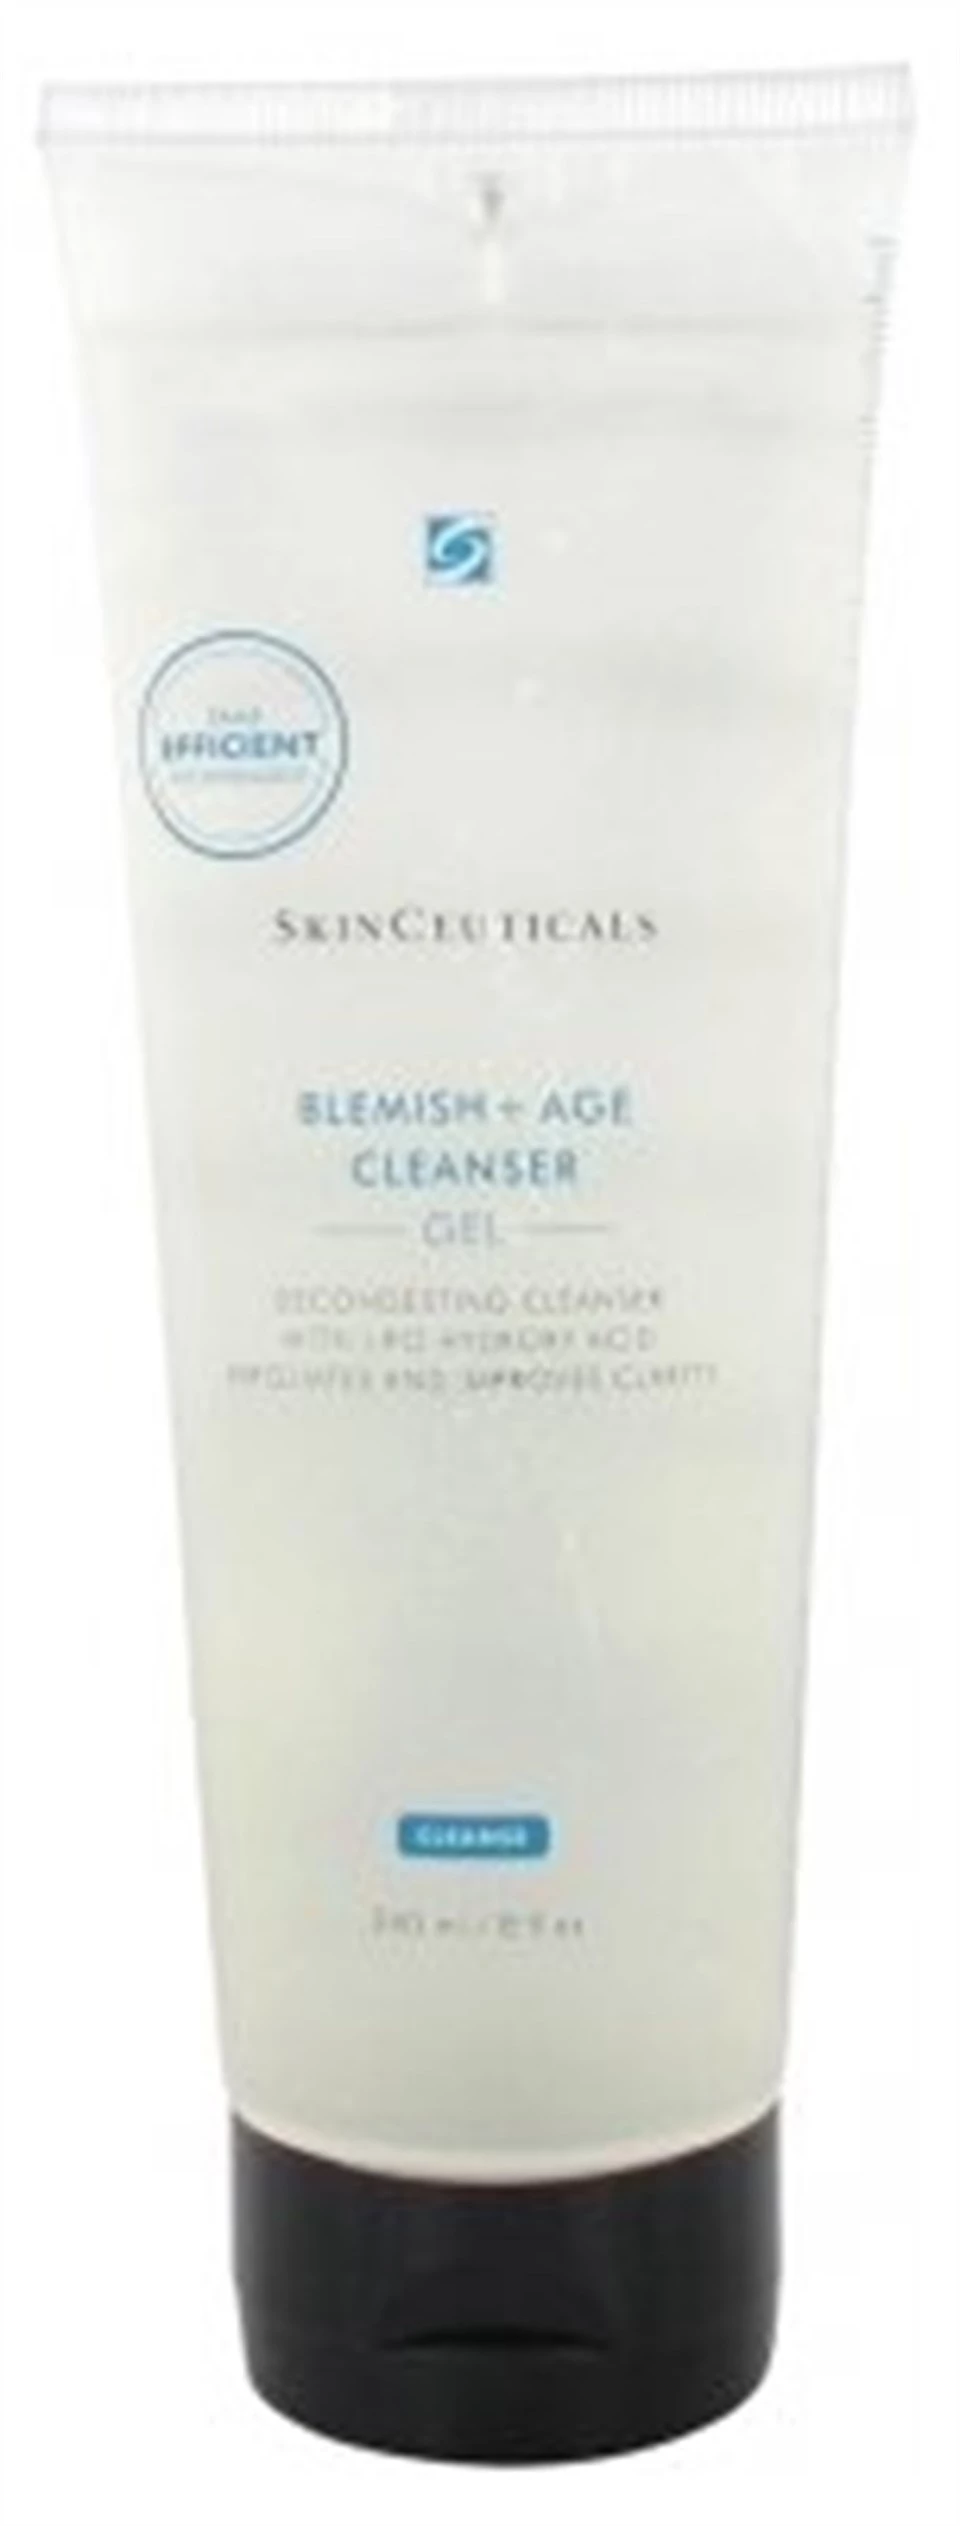 Skinceuticals Blemish Age Cleanser Gel cildi eksfoliye eden ve birleştiren bir lipo-hidroksi asit temizleme jelidir.